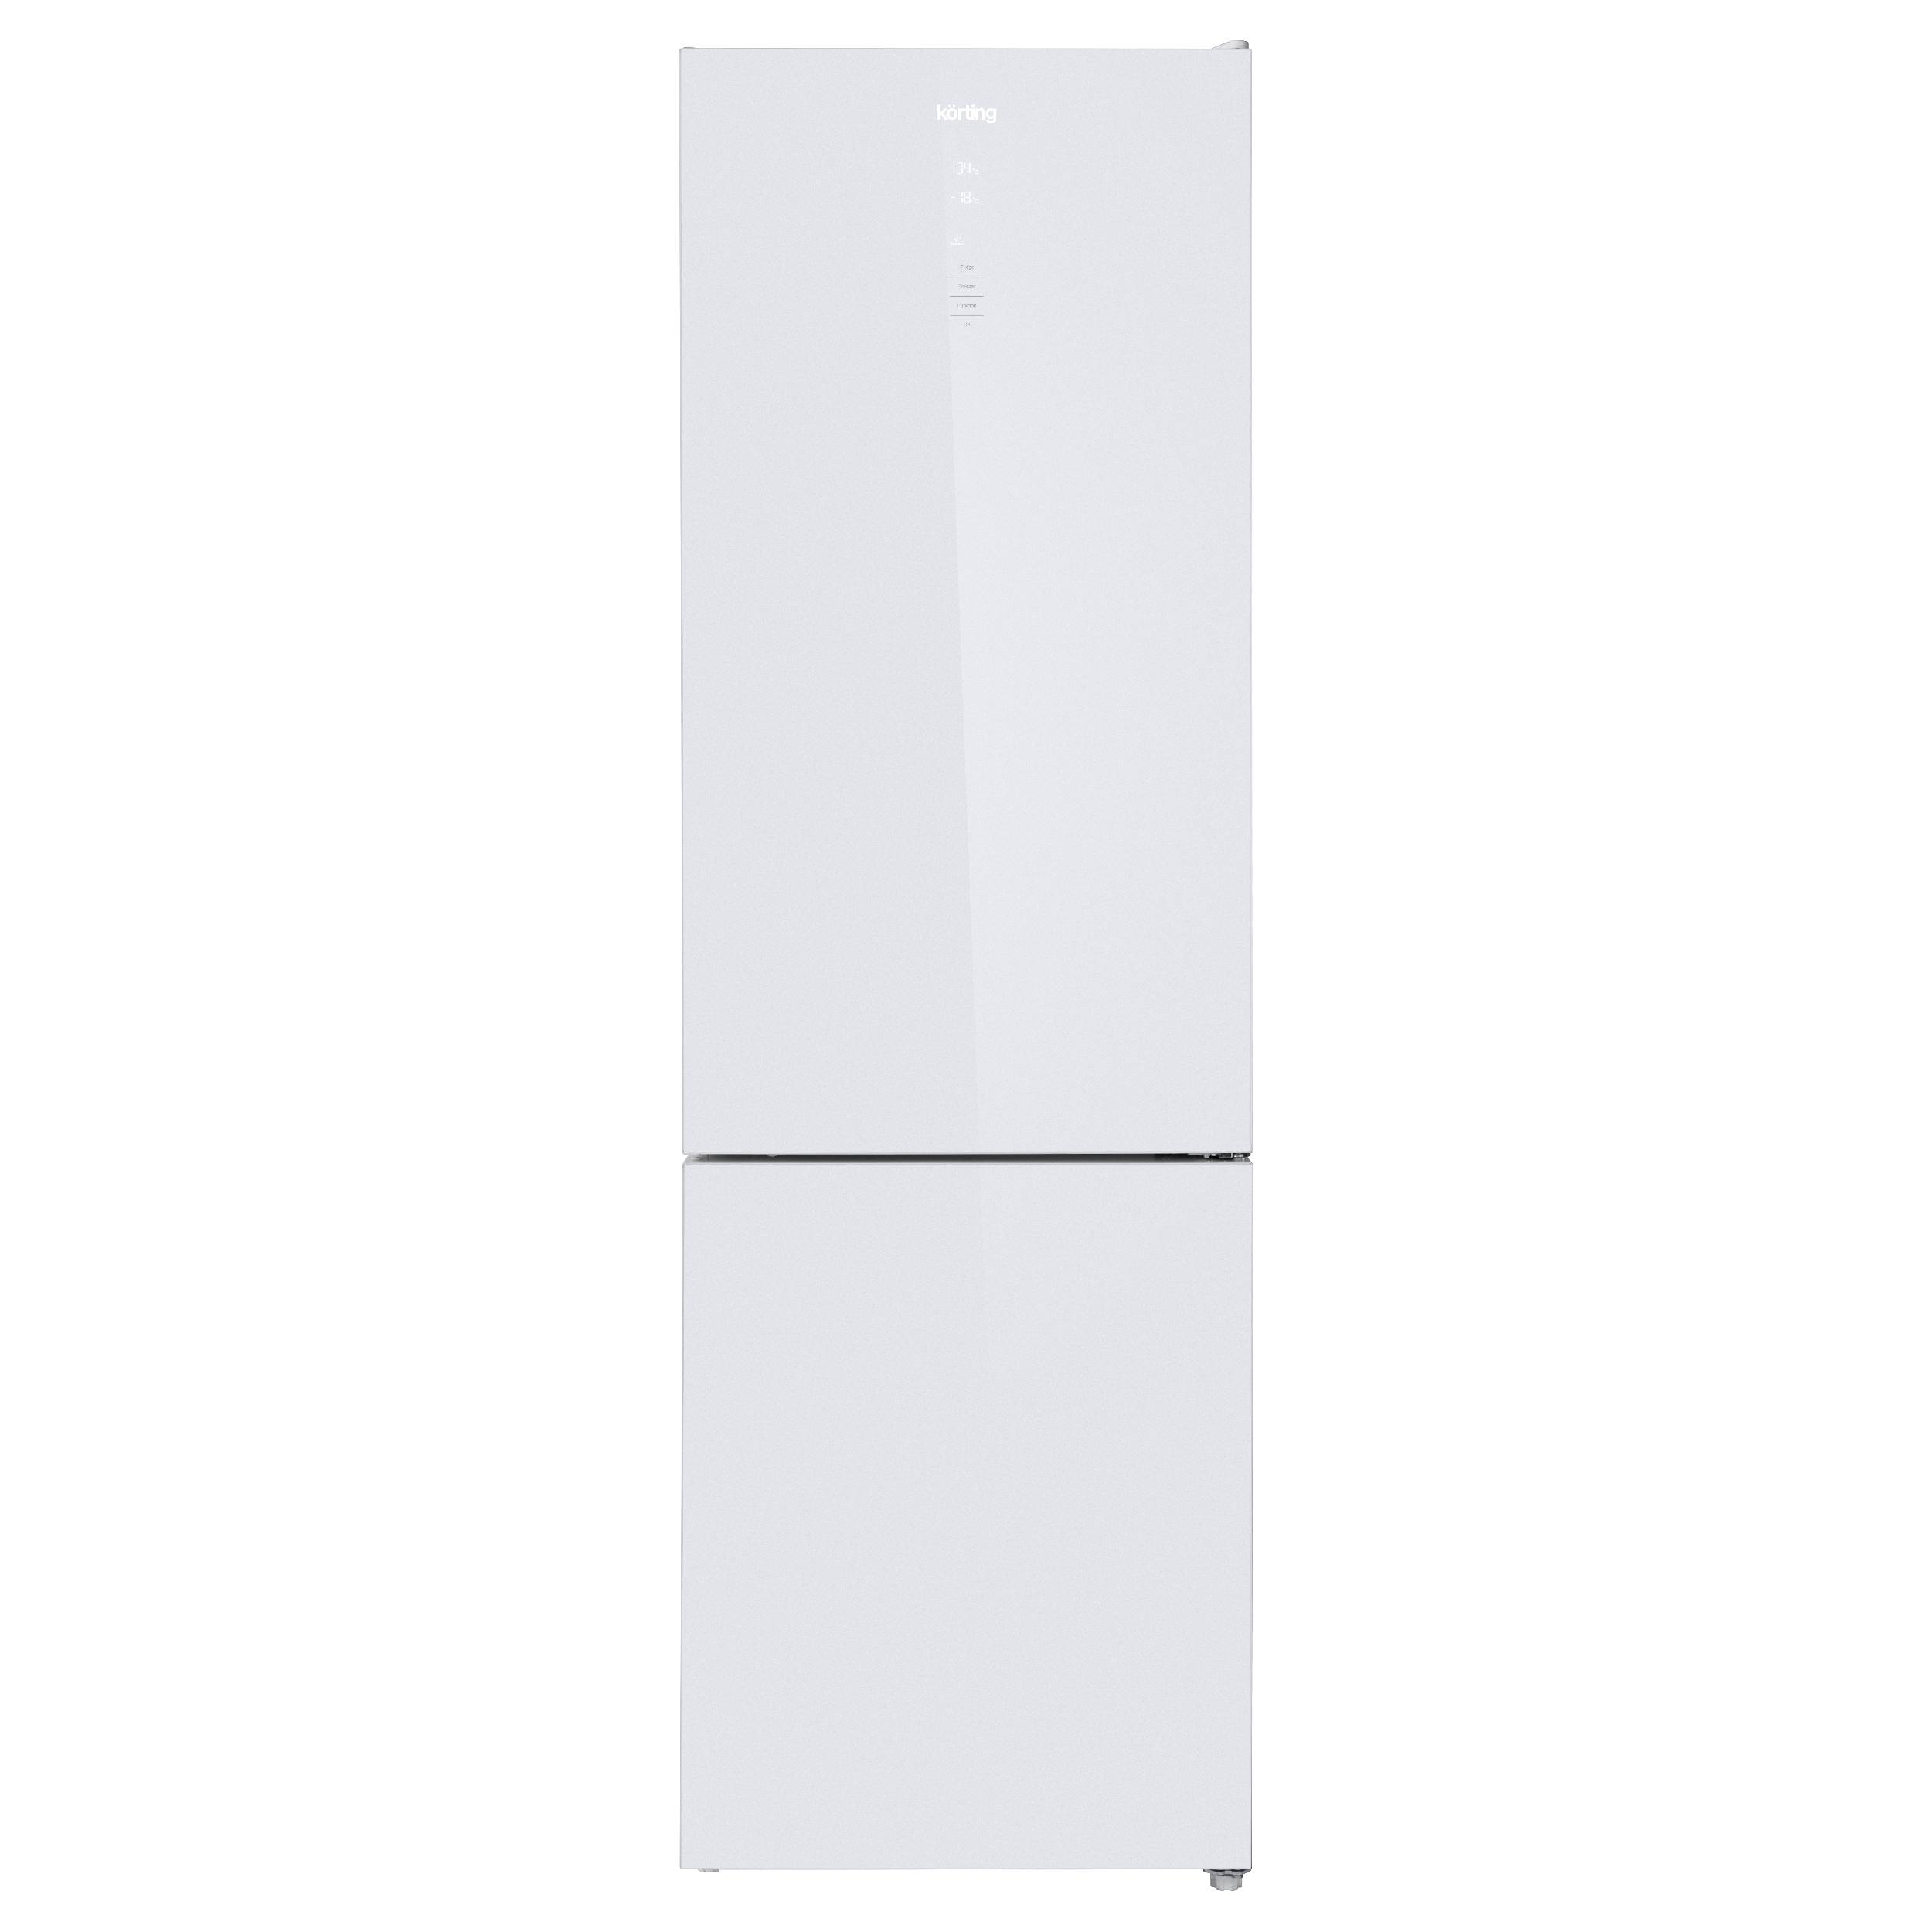 Холодильник Korting KNFC 62370 GW белый, серебристый холодильник korting knfc 62980 gn